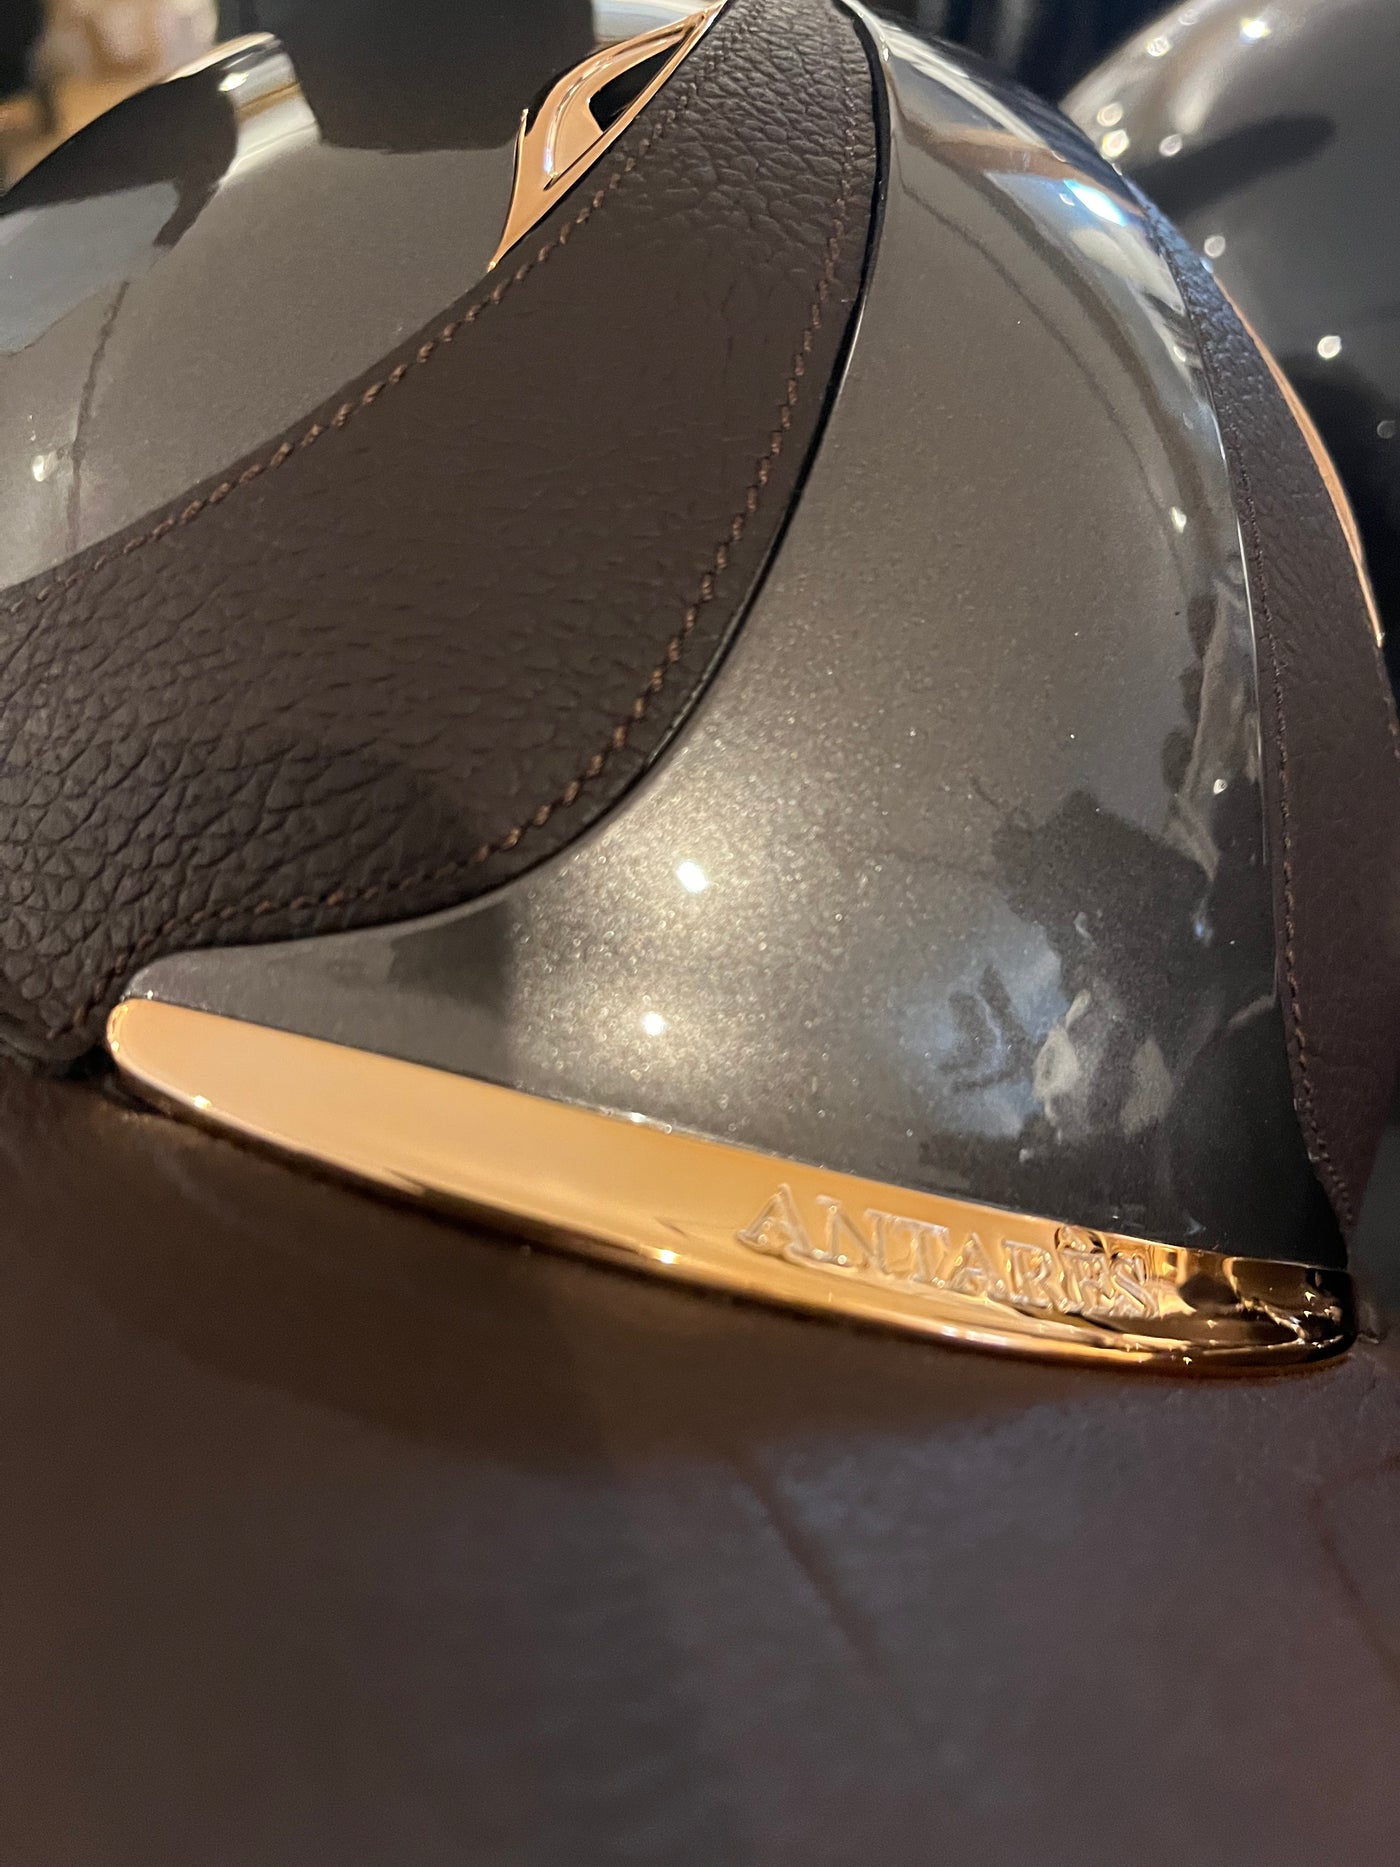 Antares Premium Eclipse Helmet